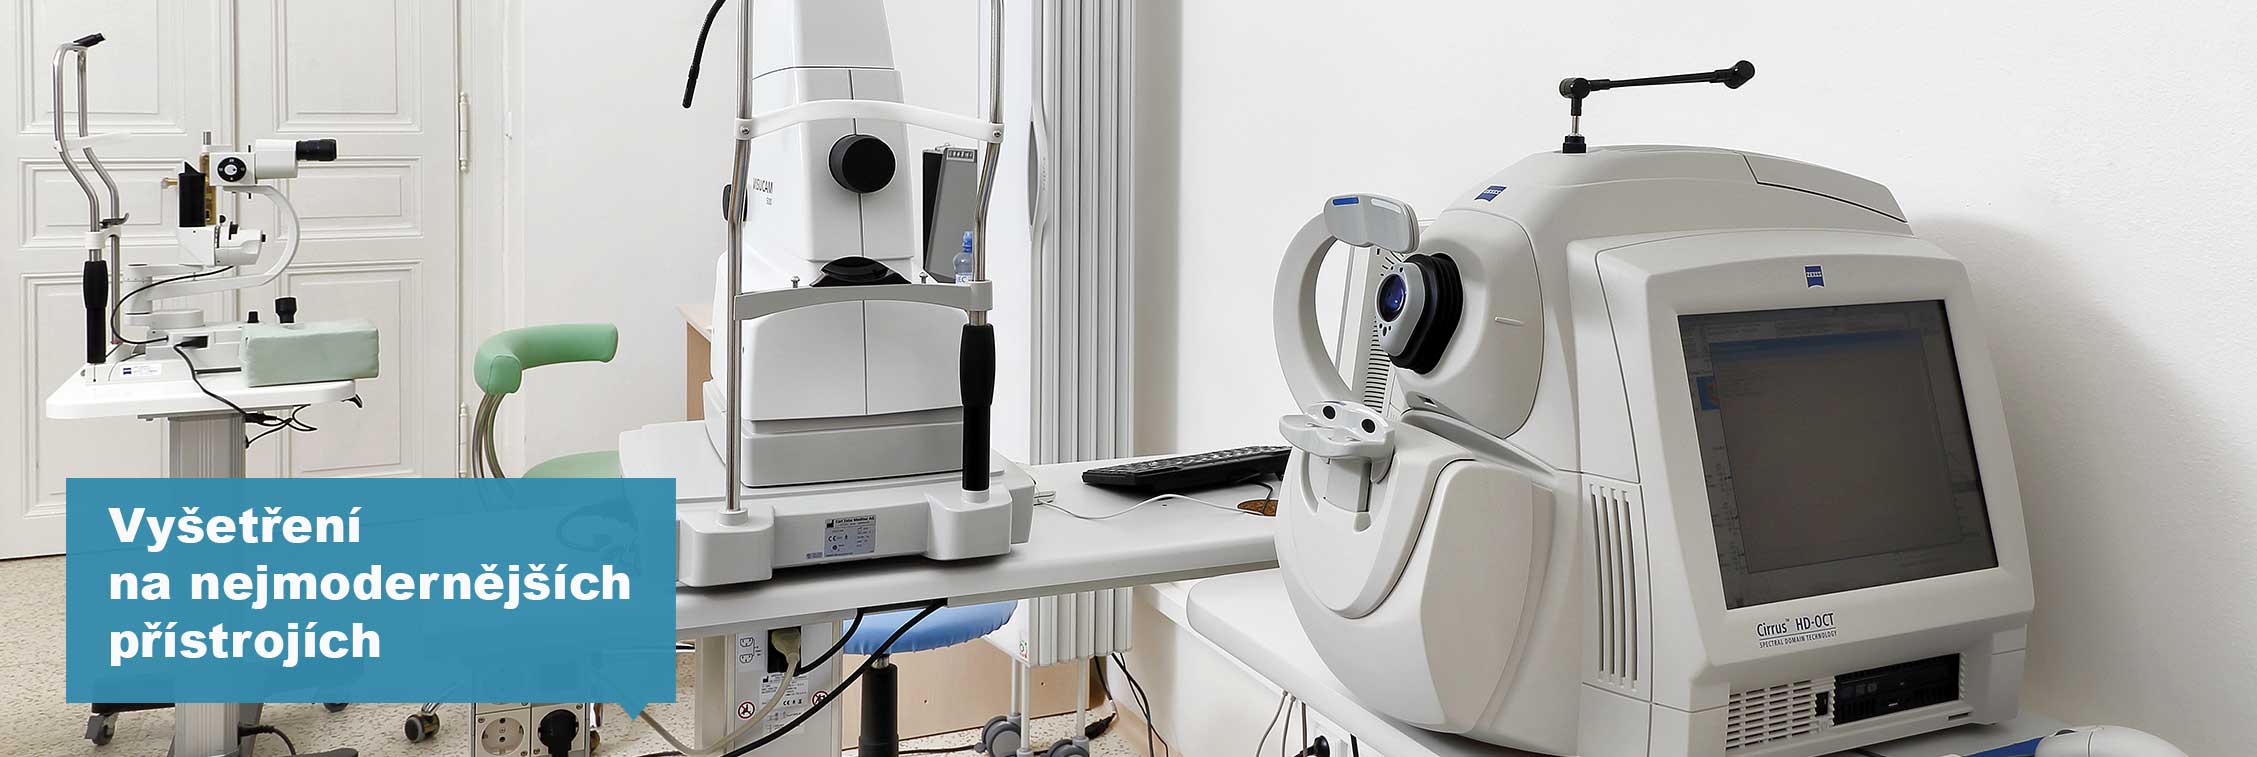 Vyšetření na nejmodernějších přístrojích u očního lékaře Klinoft